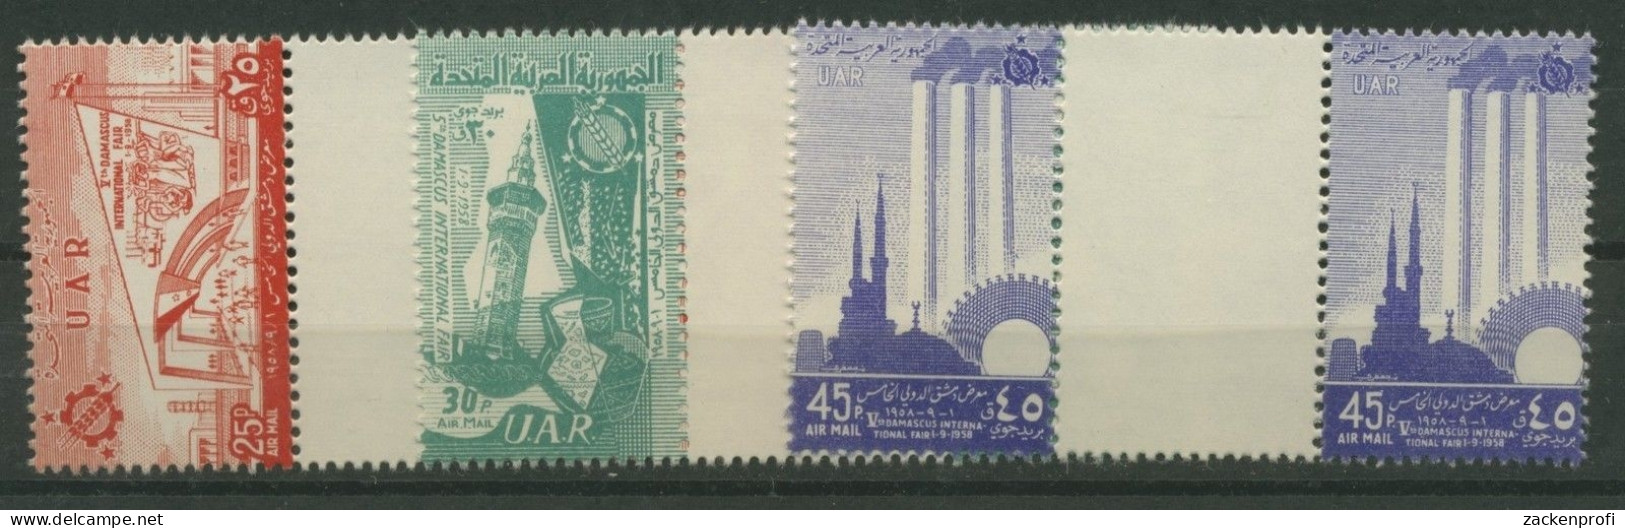 Syrien VAR 1958 Messe Damaskus V9/11 Mit Zwischensteg Postfrisch (G1788) - Syrien